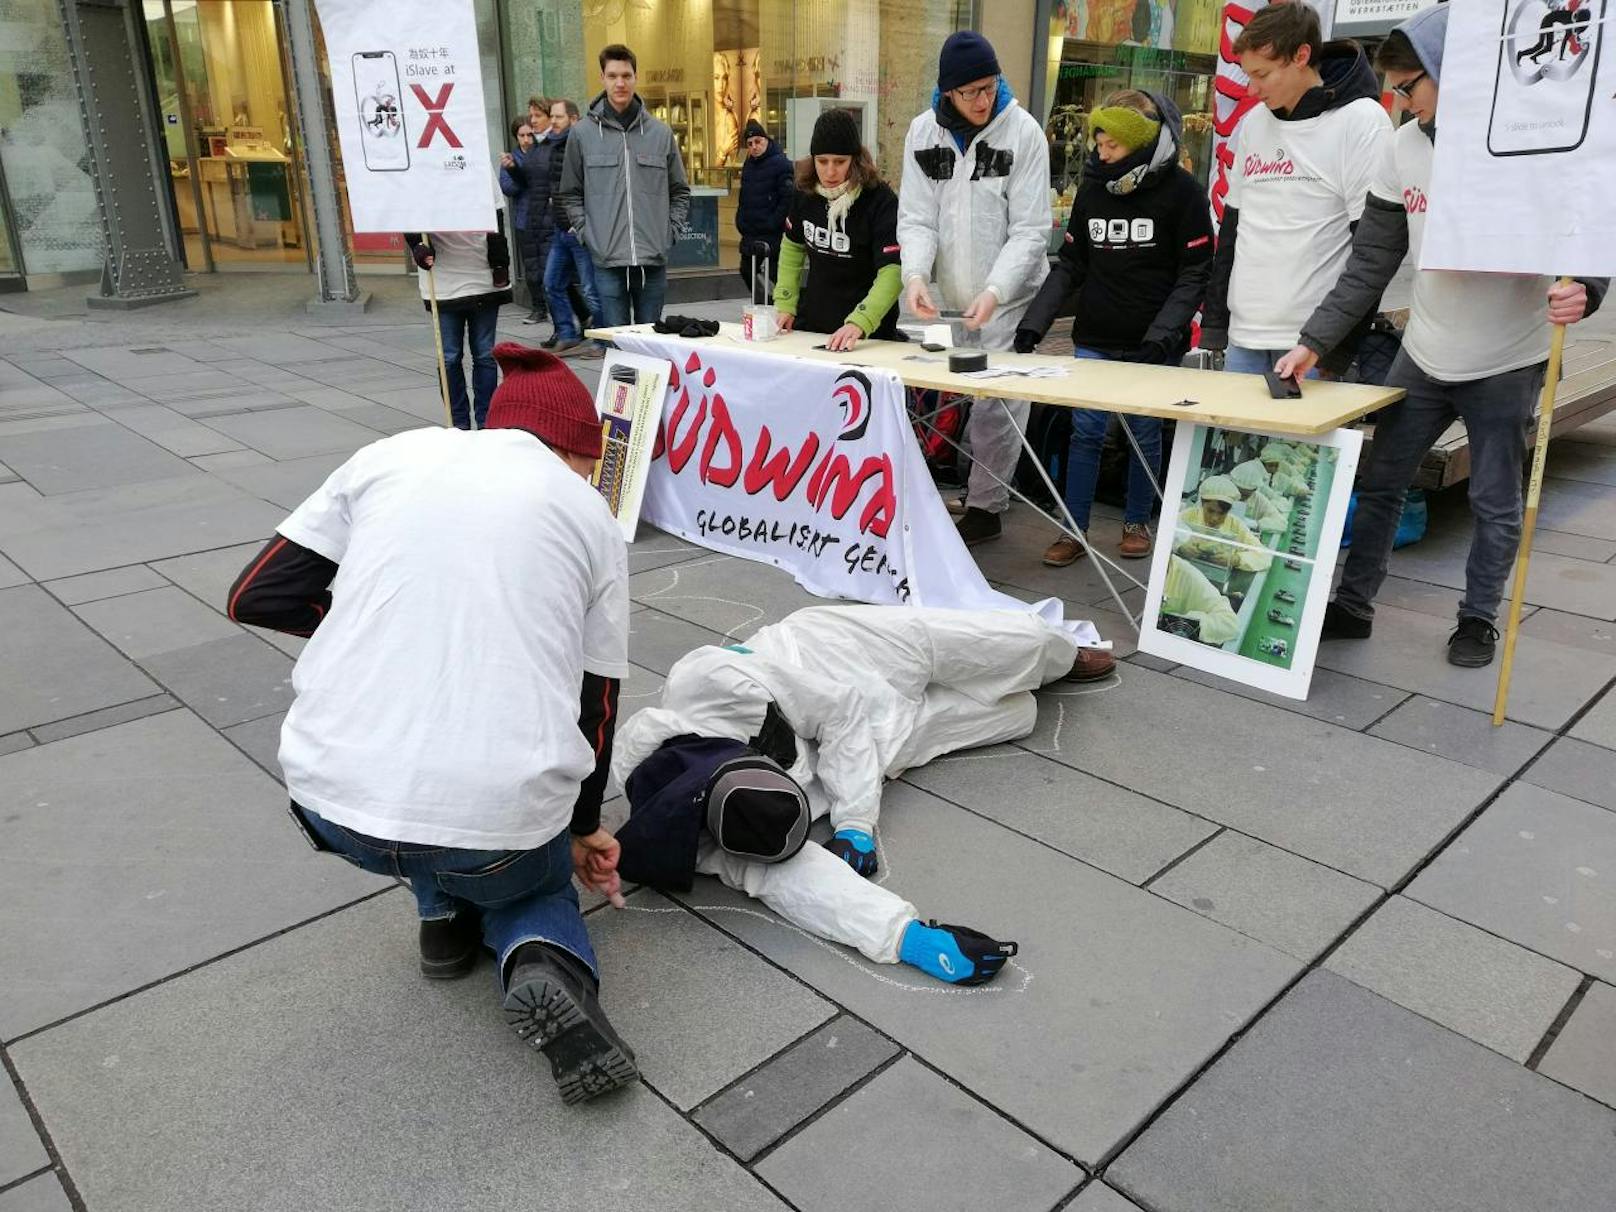 Der Verein "Südwind" protestierte gegen Arbeitsbedingungen in Apple-Fabriken